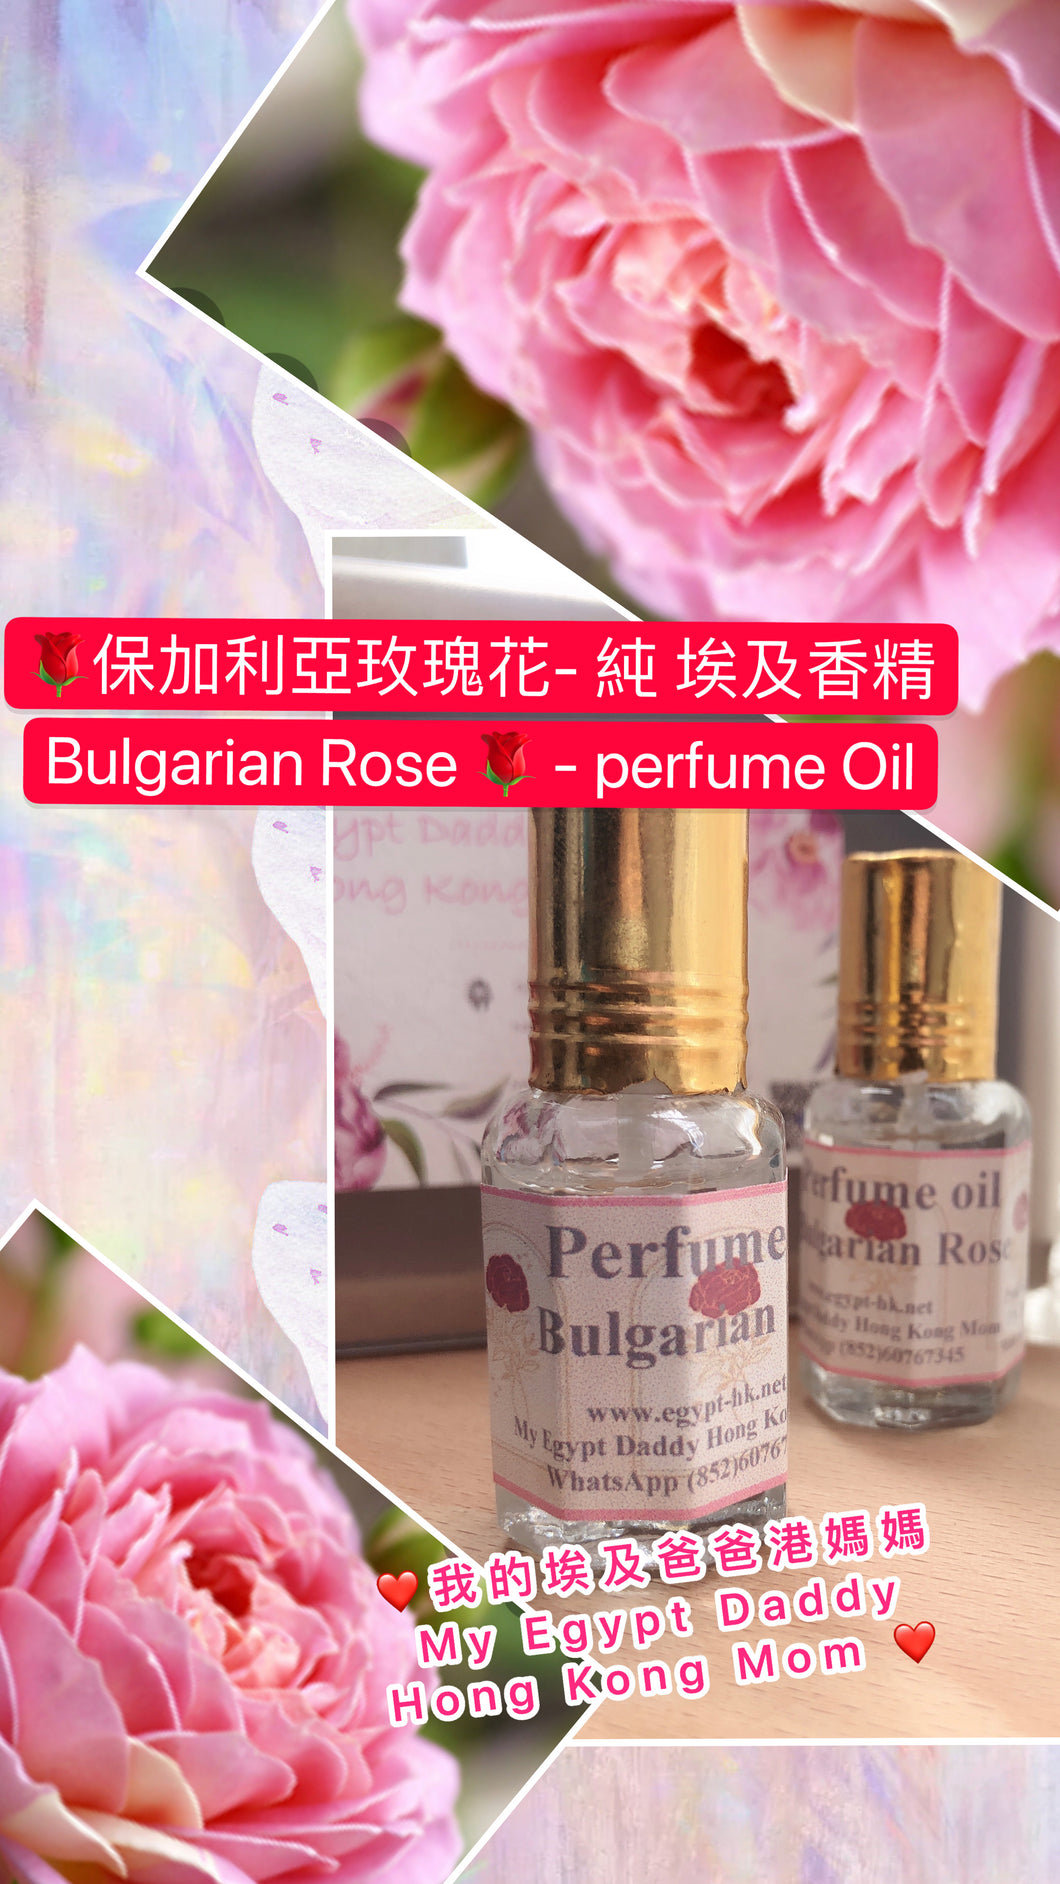 保加利亞玫瑰花 Bulgarian Rose 🌹-埃及香精油 Perfume oil（熱賣款式）